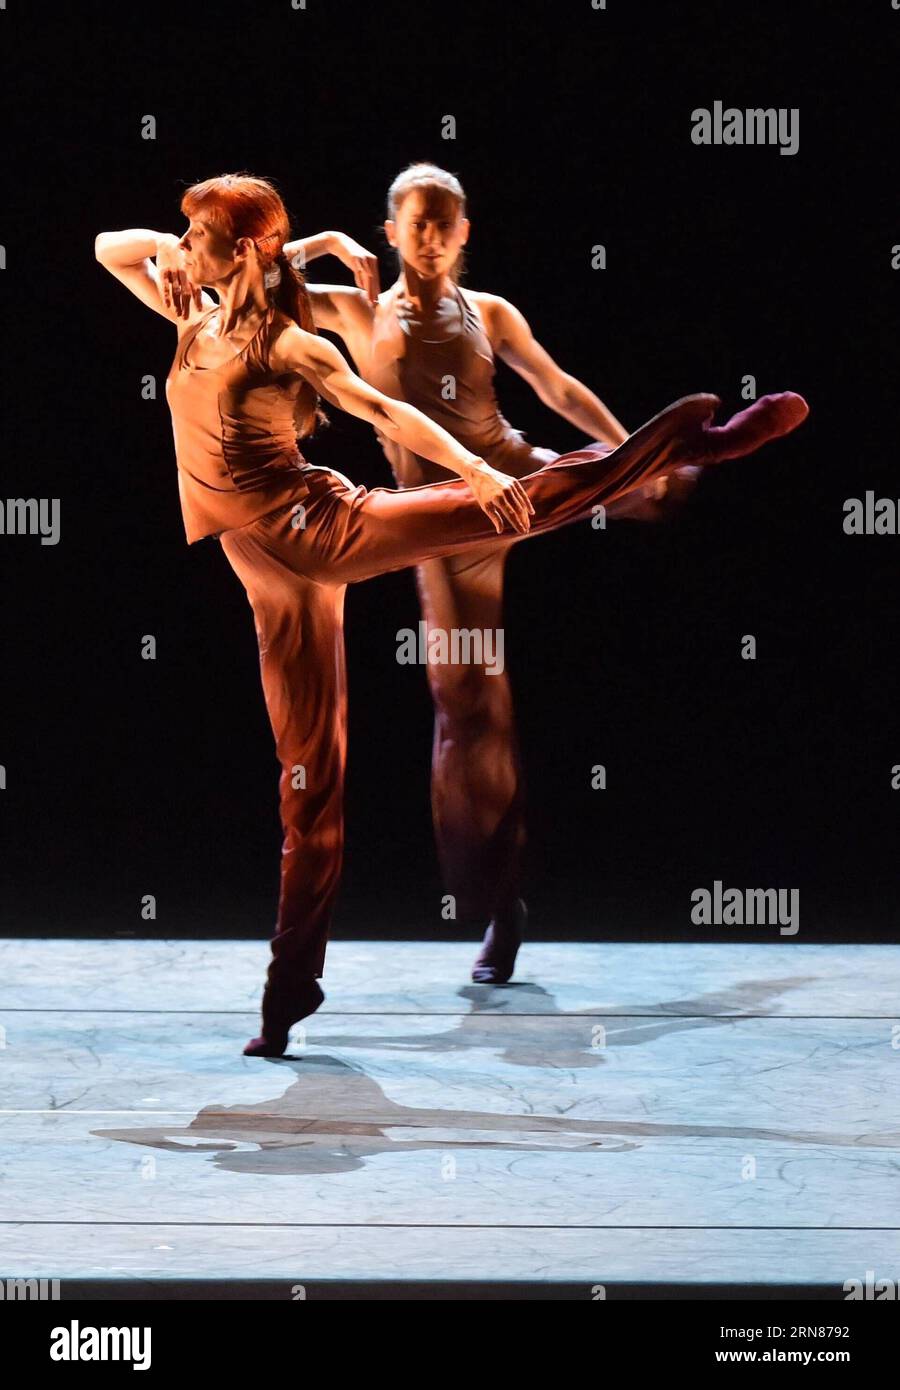 La ballerine de renommée mondiale Sylvie Guillem (L) danse dans sa tournée finale intitulée Life in Progress au Centre national des arts de la performance à Beijing, capitale de la Chine, le 9 octobre 2015. Sylvie Guillem, 50 ans, a décidé de se séparer de la scène après une carrière de 39 ans avec sa tournée mondiale de spectacles d'adieu. (wsw) CHINA-BEIJING-DANCE-SYLVIE GUILLEM (CN) LuoxXiaoguang PUBLICATIONxNOTxINxCHN Ballerina de renommée mondiale Sylvie Guillem danse dans sa tournée finale intitulée Life in Progress AU Centre national des arts de la performance à Beijing capitale de la Chine OCT 9 2 Banque D'Images